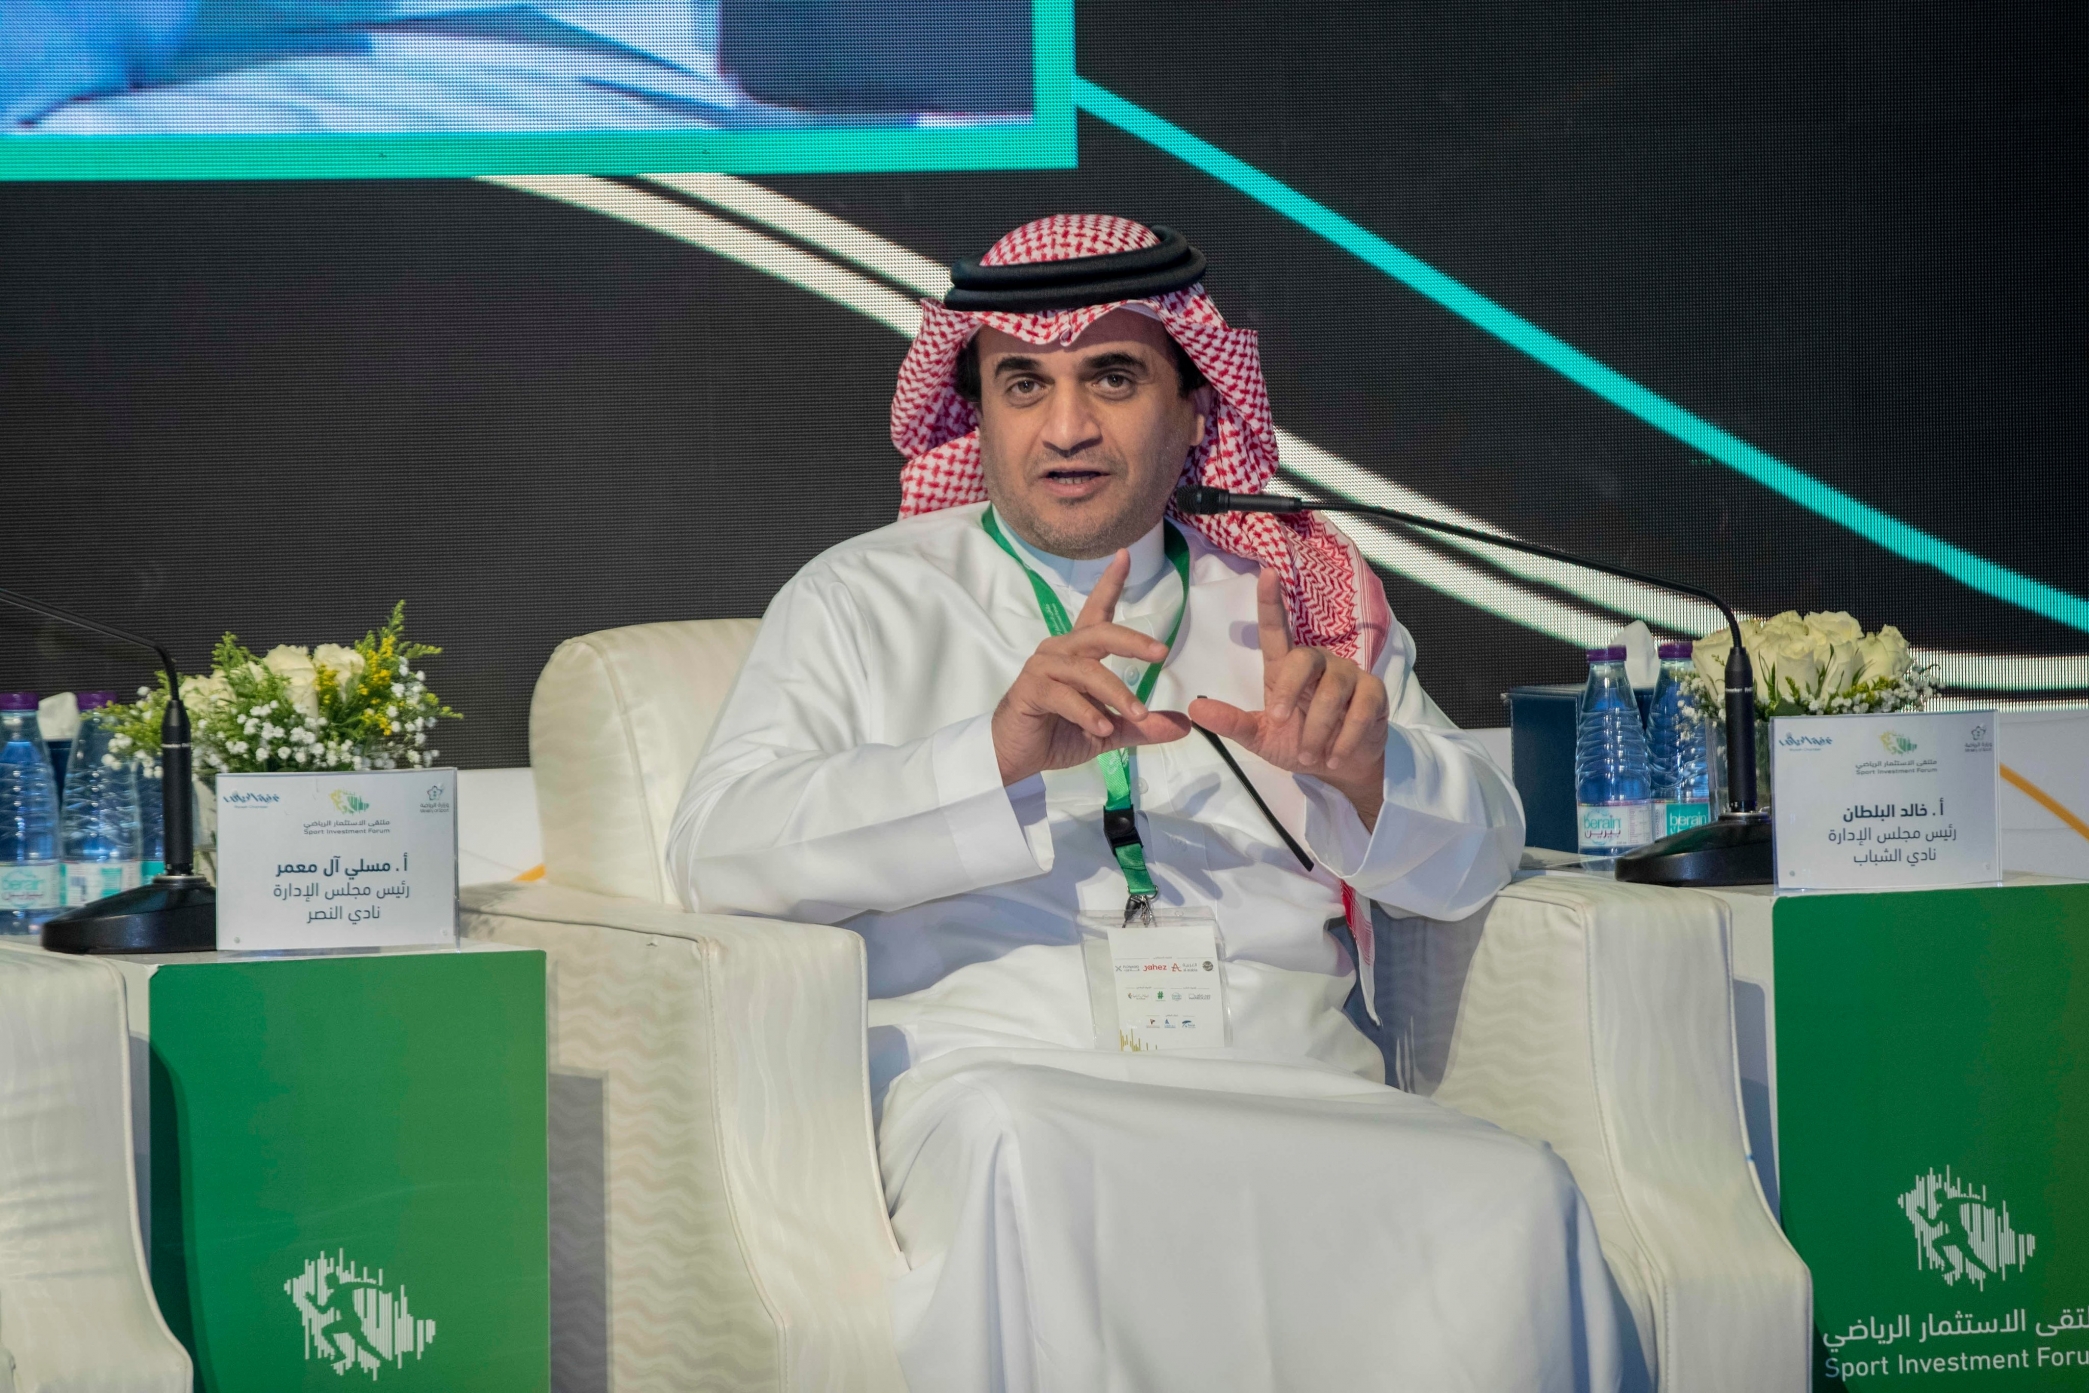 خالد البلطان: الاستثمار الرياضي رابح وللأندية ثروات لم تُستغل